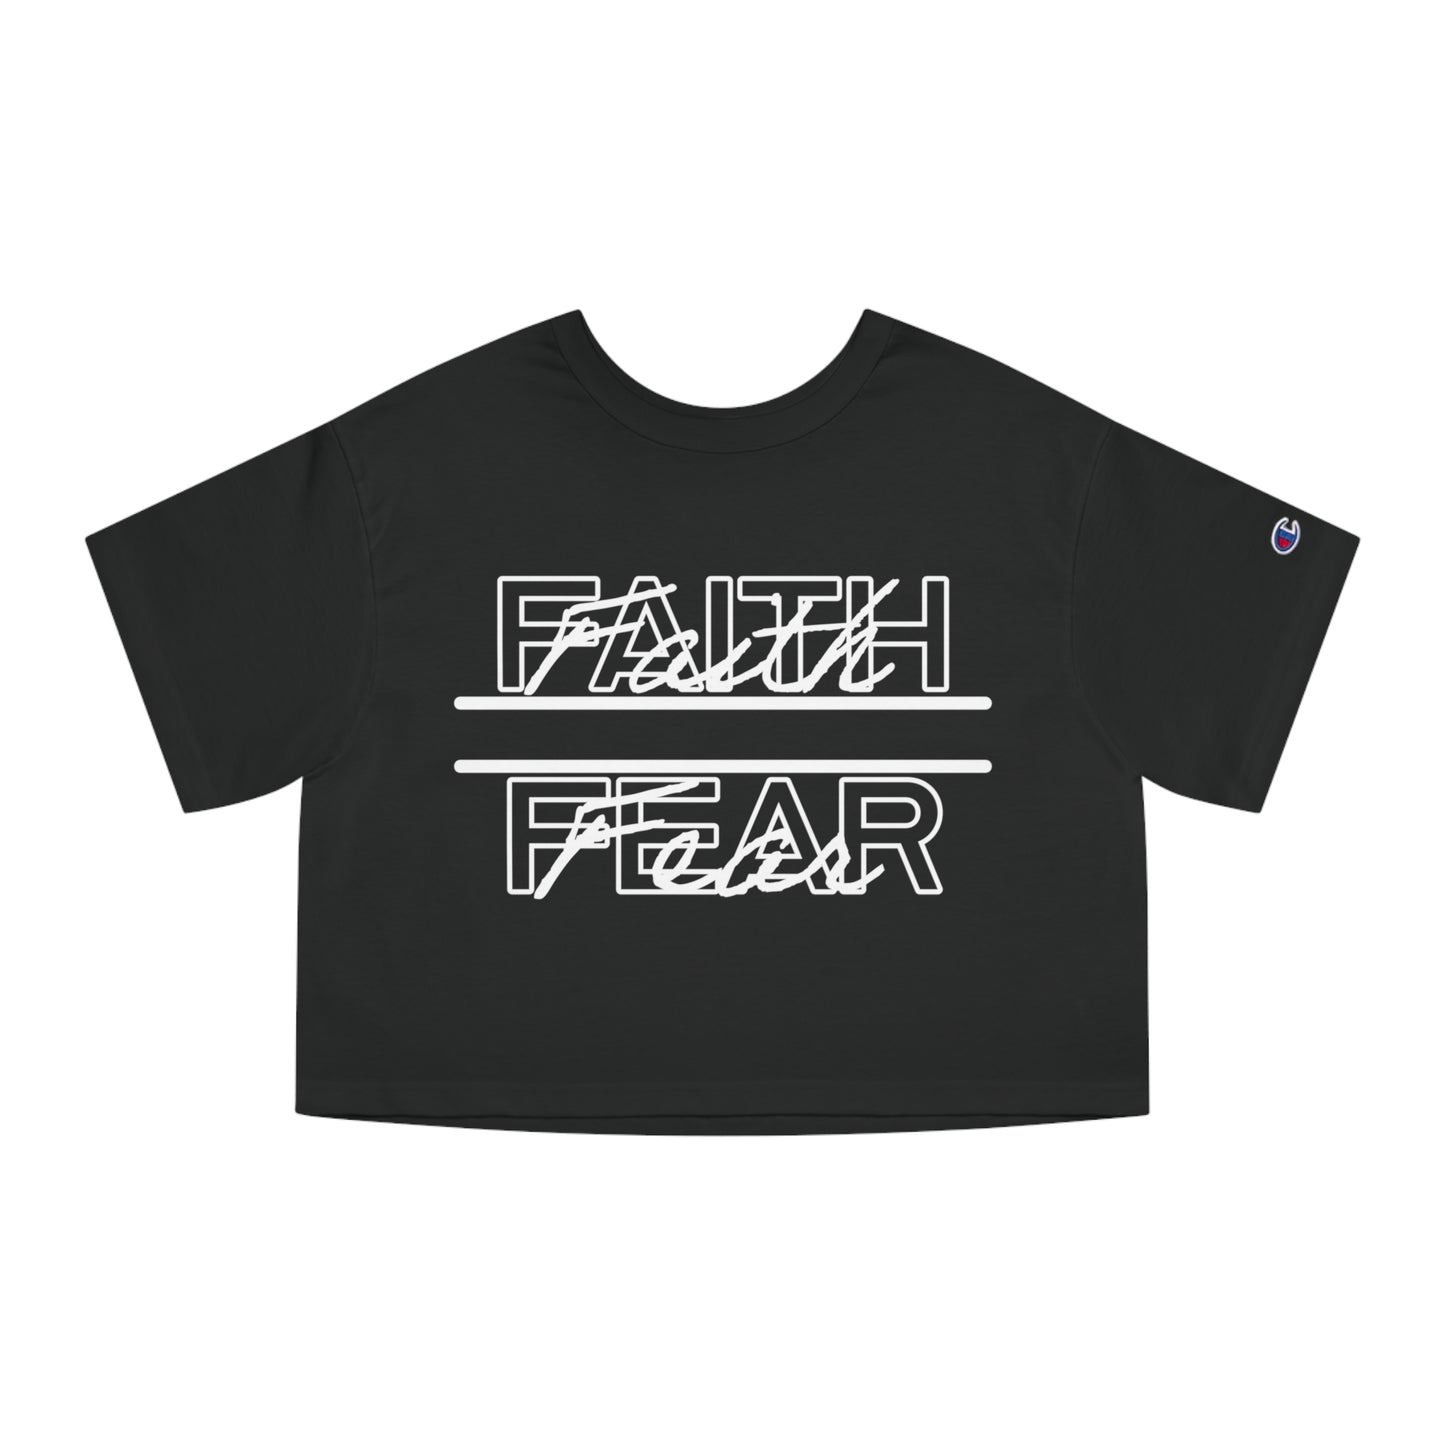 Champion Women's Cropped T-Shirt, Faith Over Fear Crop Top, Champion Faith Shirt